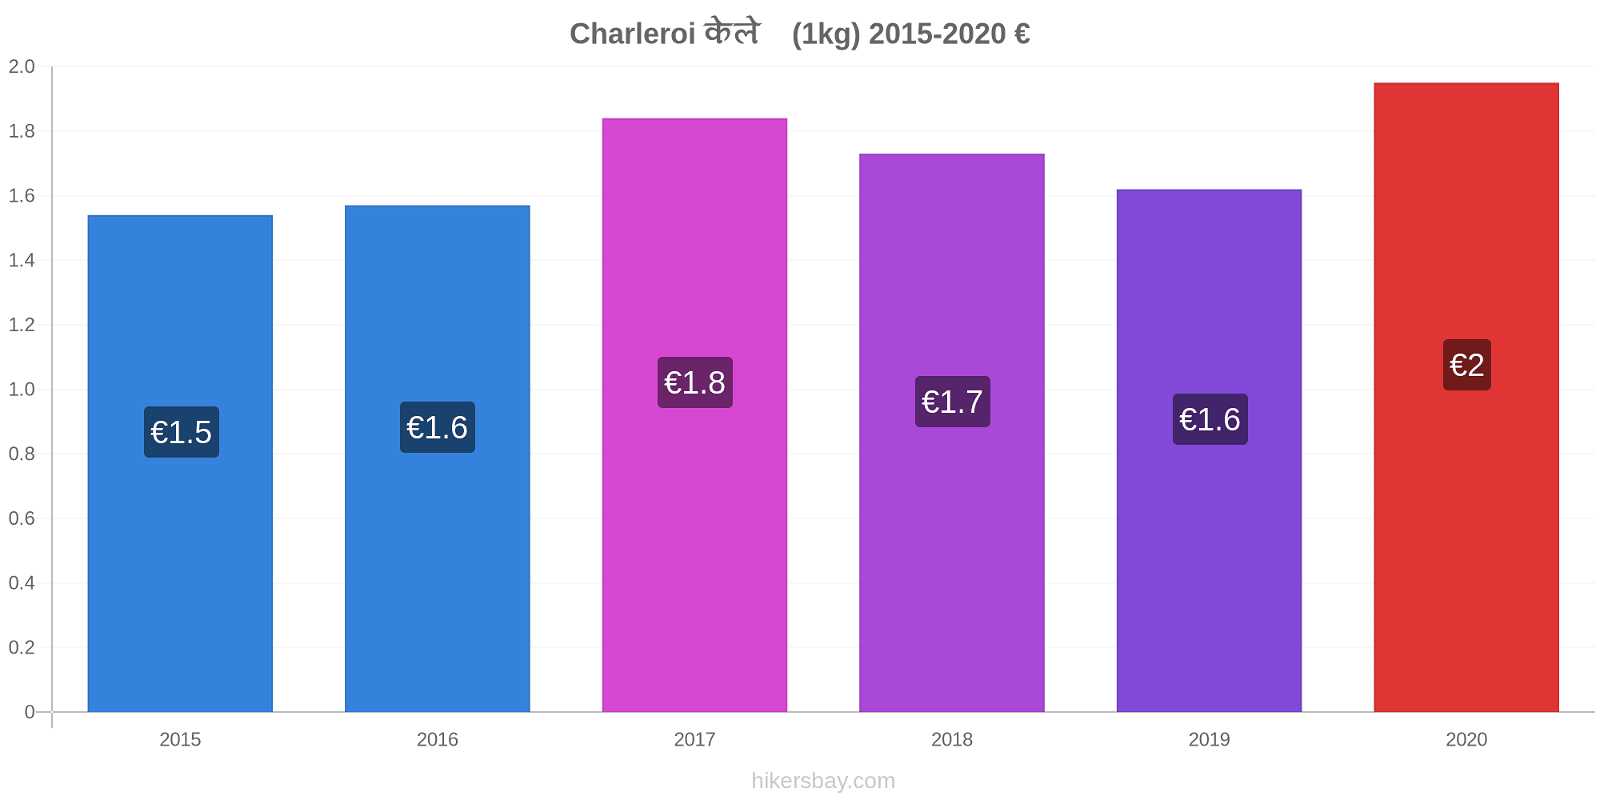 Charleroi मूल्य परिवर्तन केले (1kg) hikersbay.com